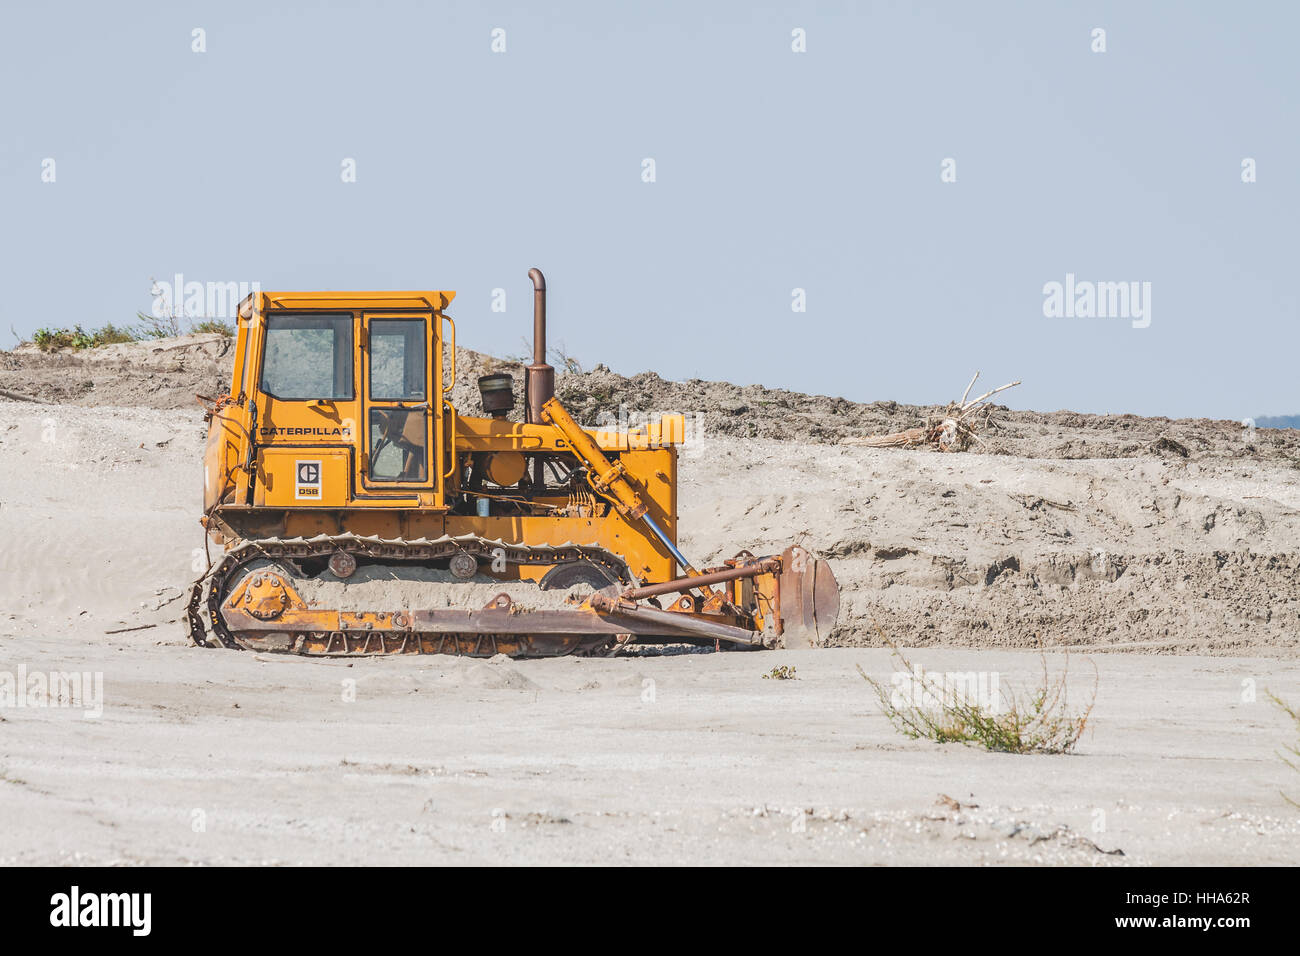 CATERPILLAR d5b trattore cingolato via bulldozer nella sabbia sulla spiaggia Foto Stock